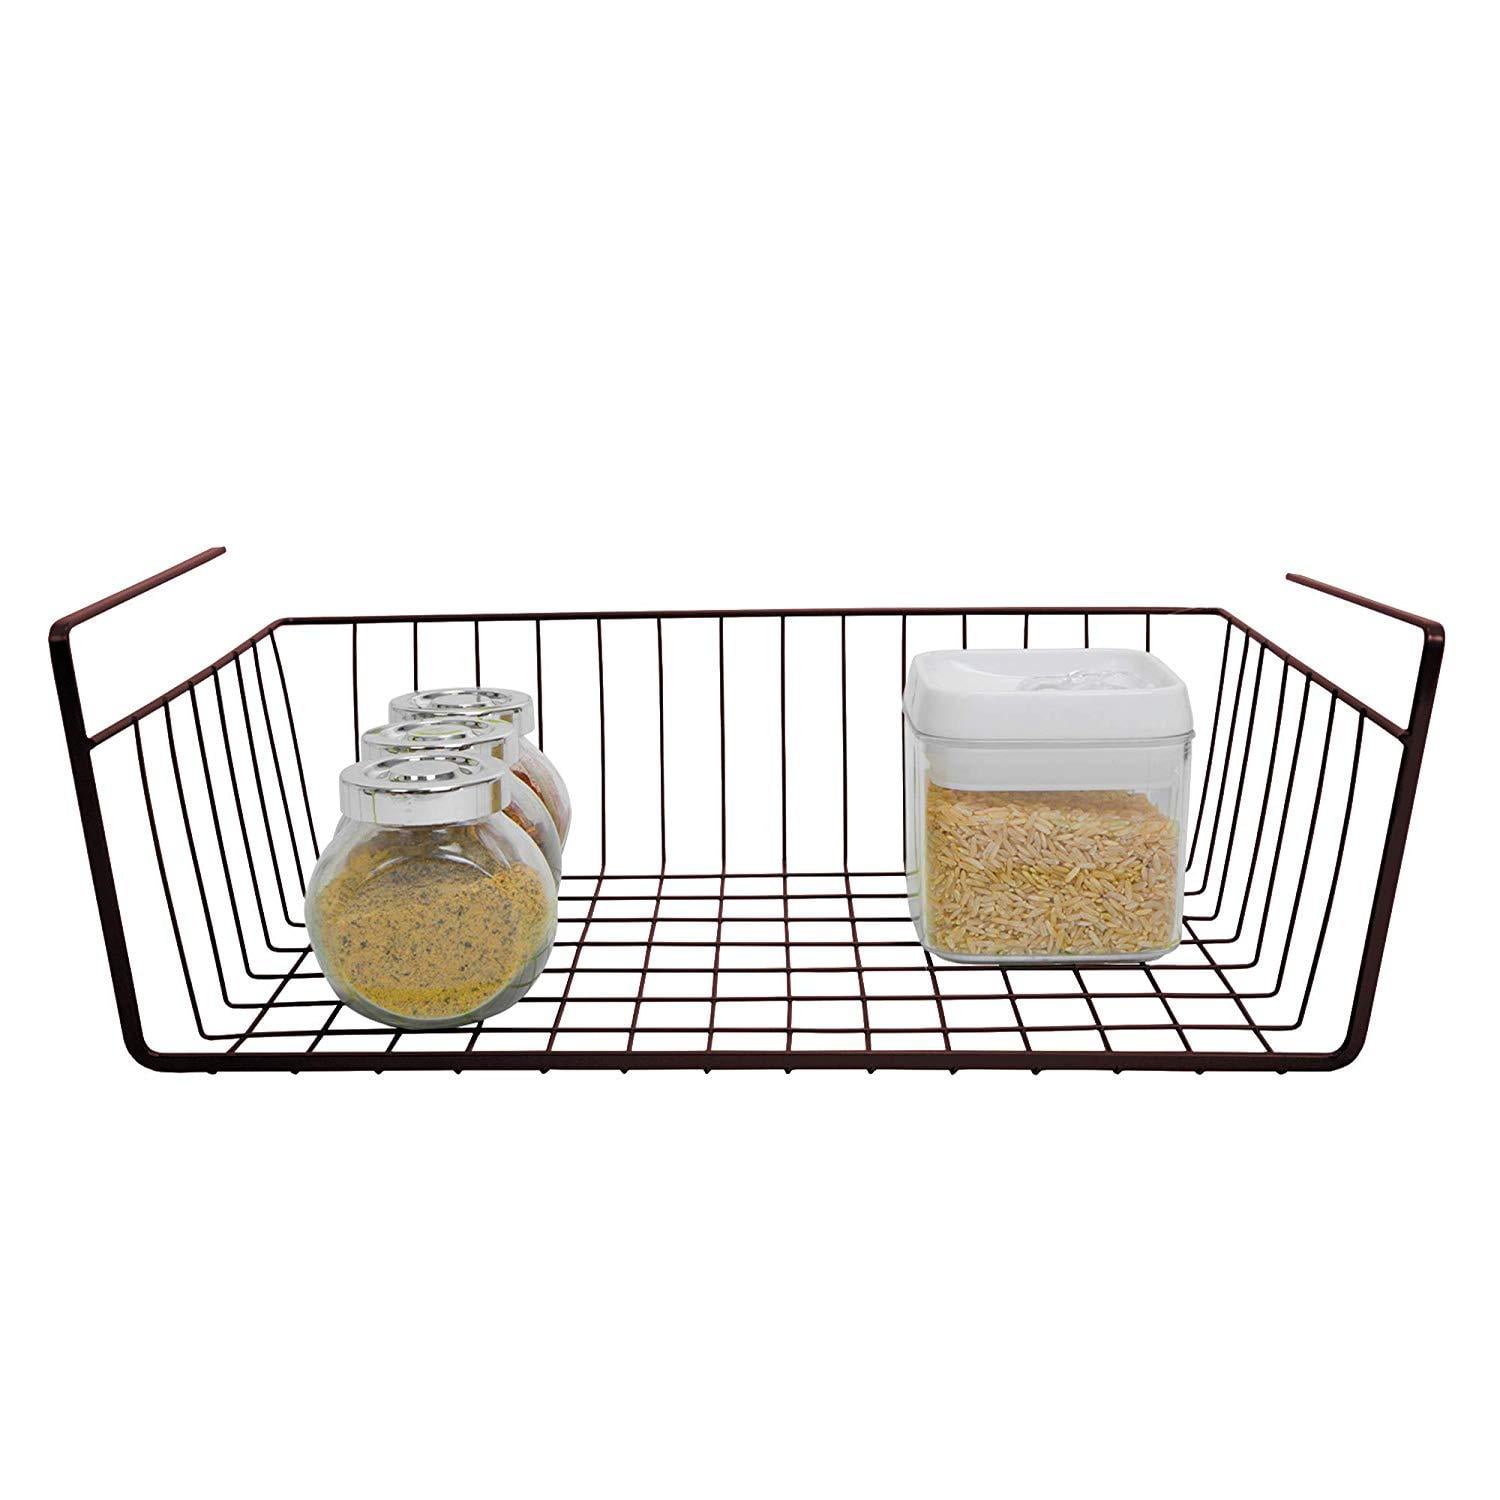 Smart Design Undershelf Storage Basket - 16 x 5.5 inch - Bed Bath